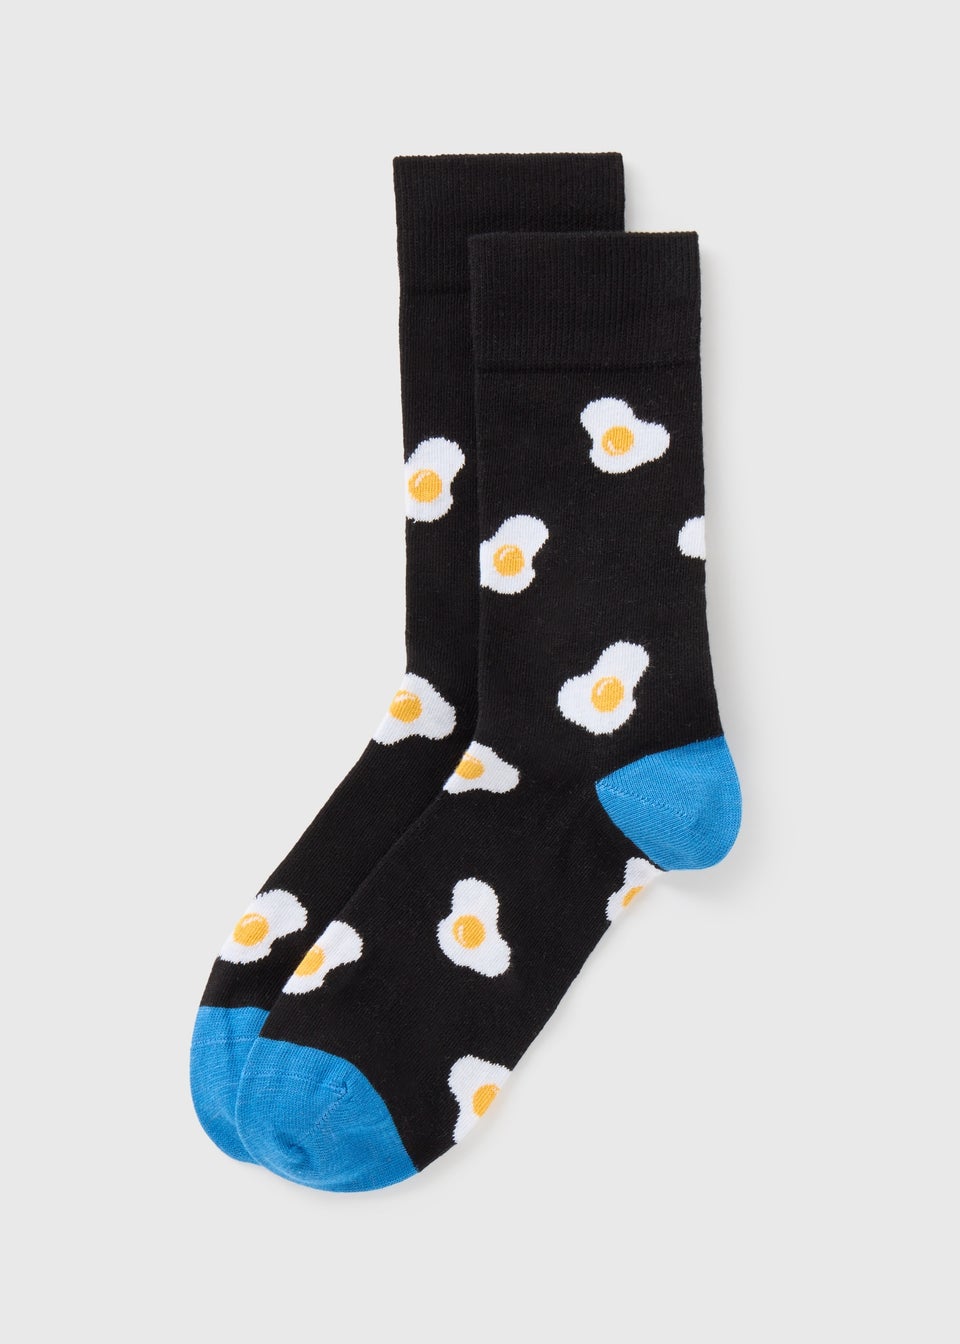 Black Fried Egg Socks